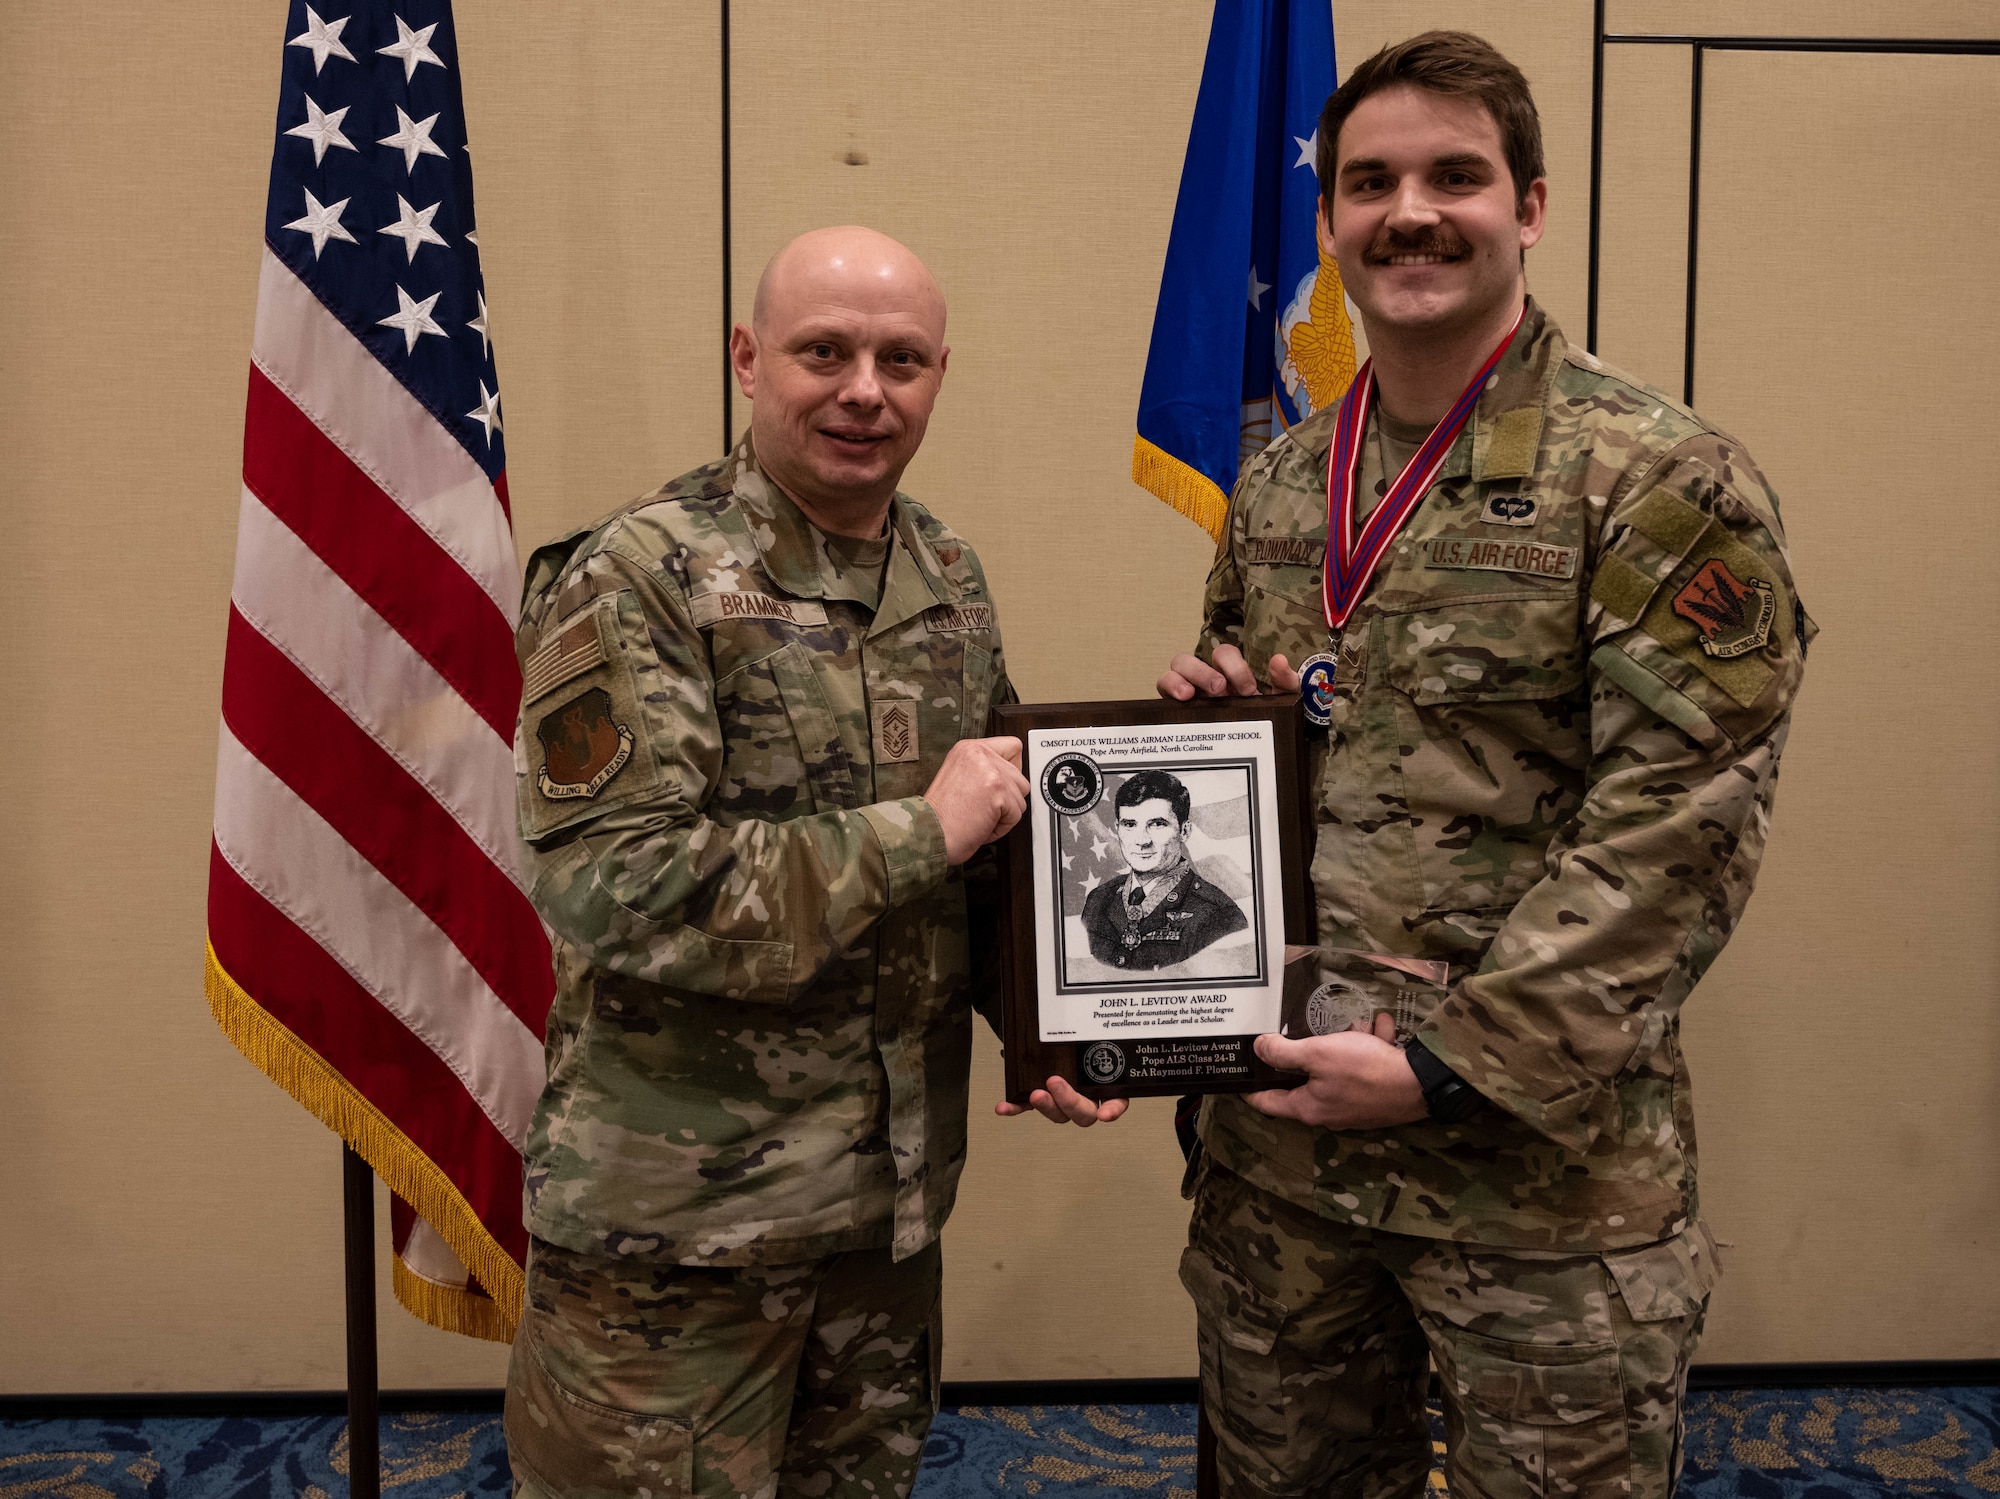 U.S. Air Force Airman receives award